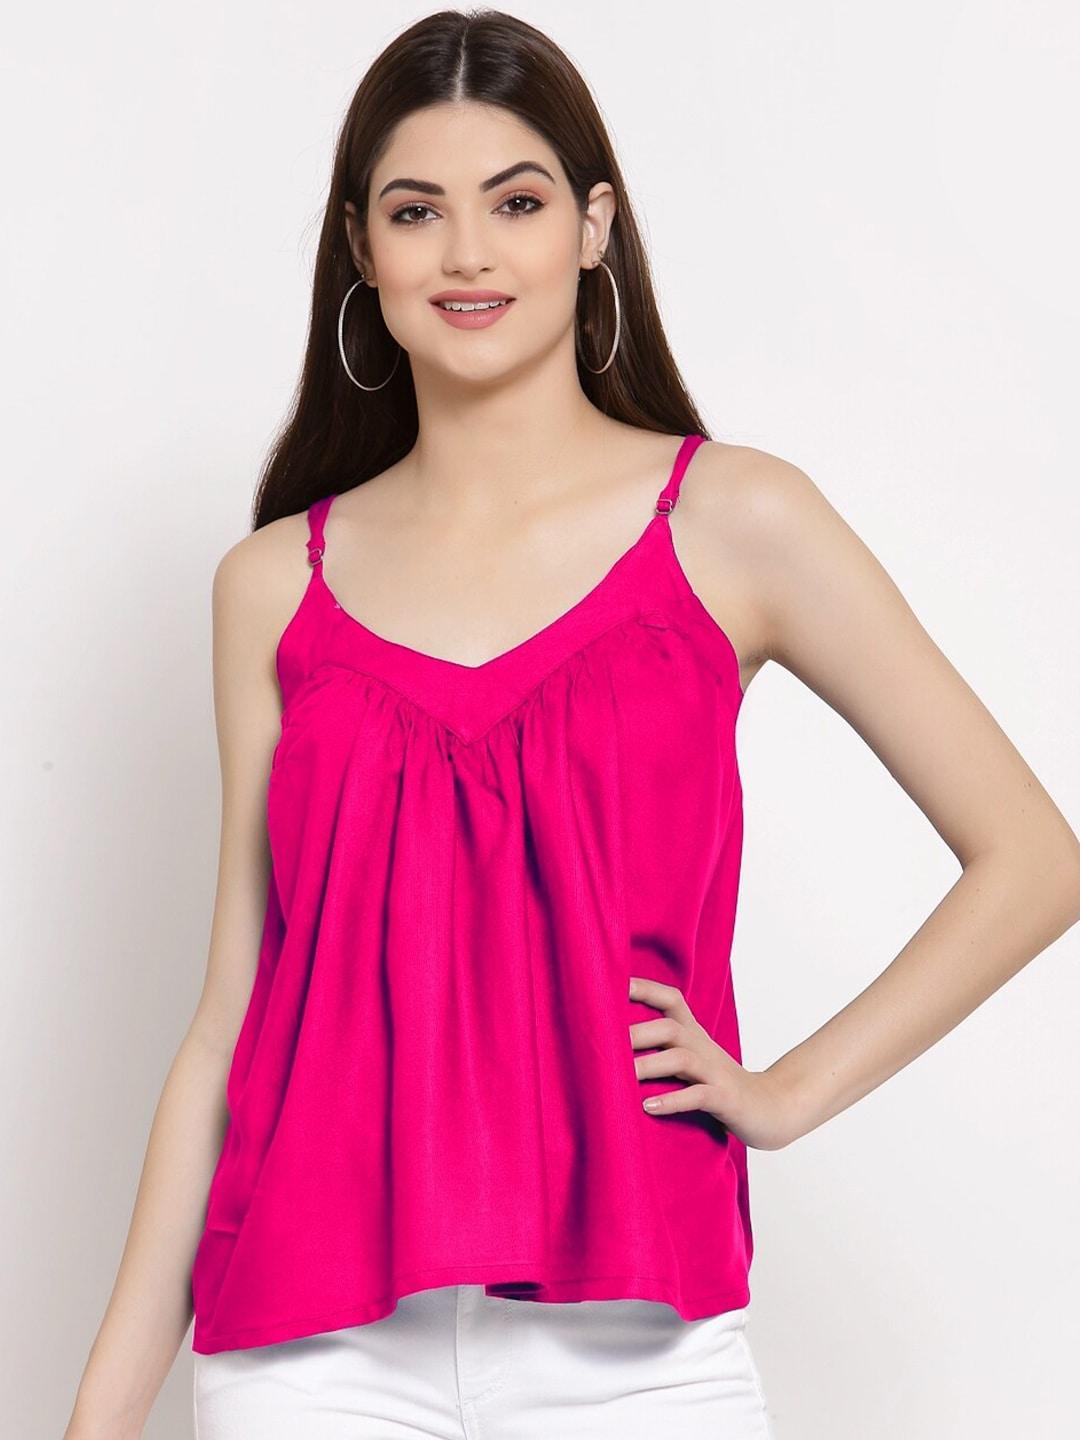 patrorna-pink-solid-shoulder-straps-cotton-blend-top